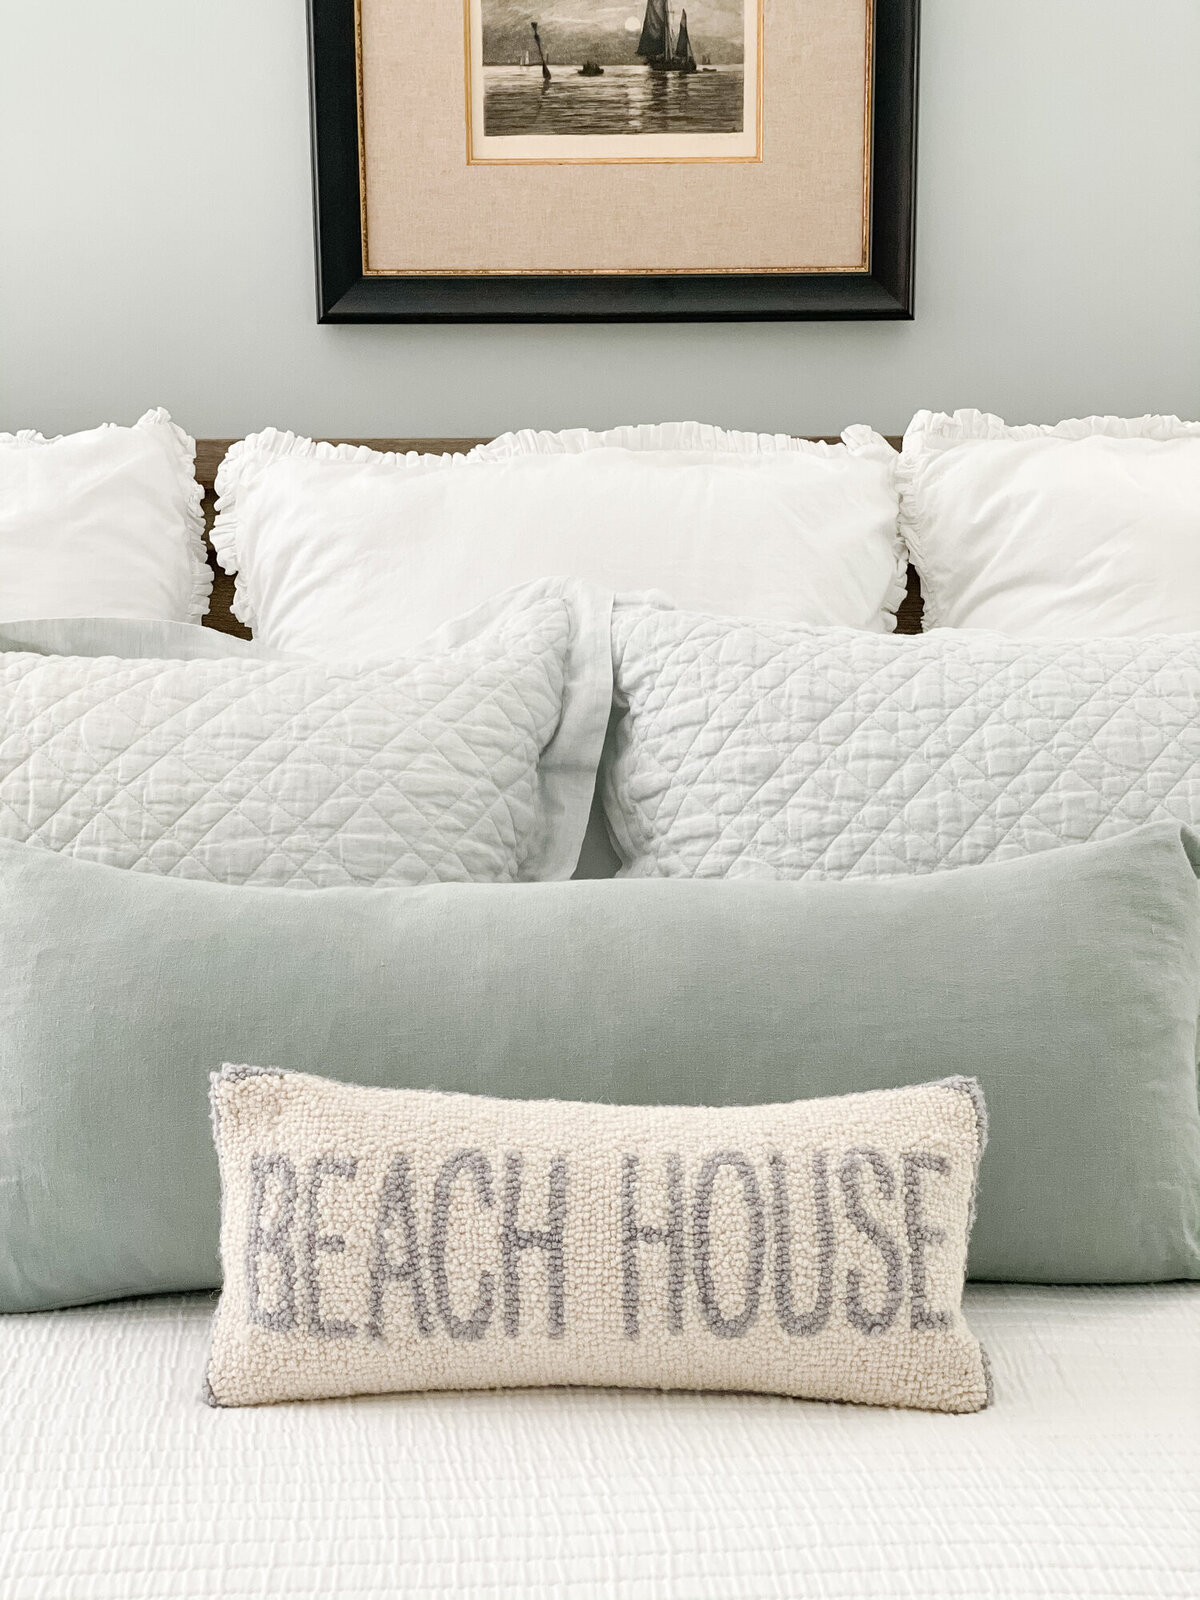 lesa-peers-beach-house-pillows